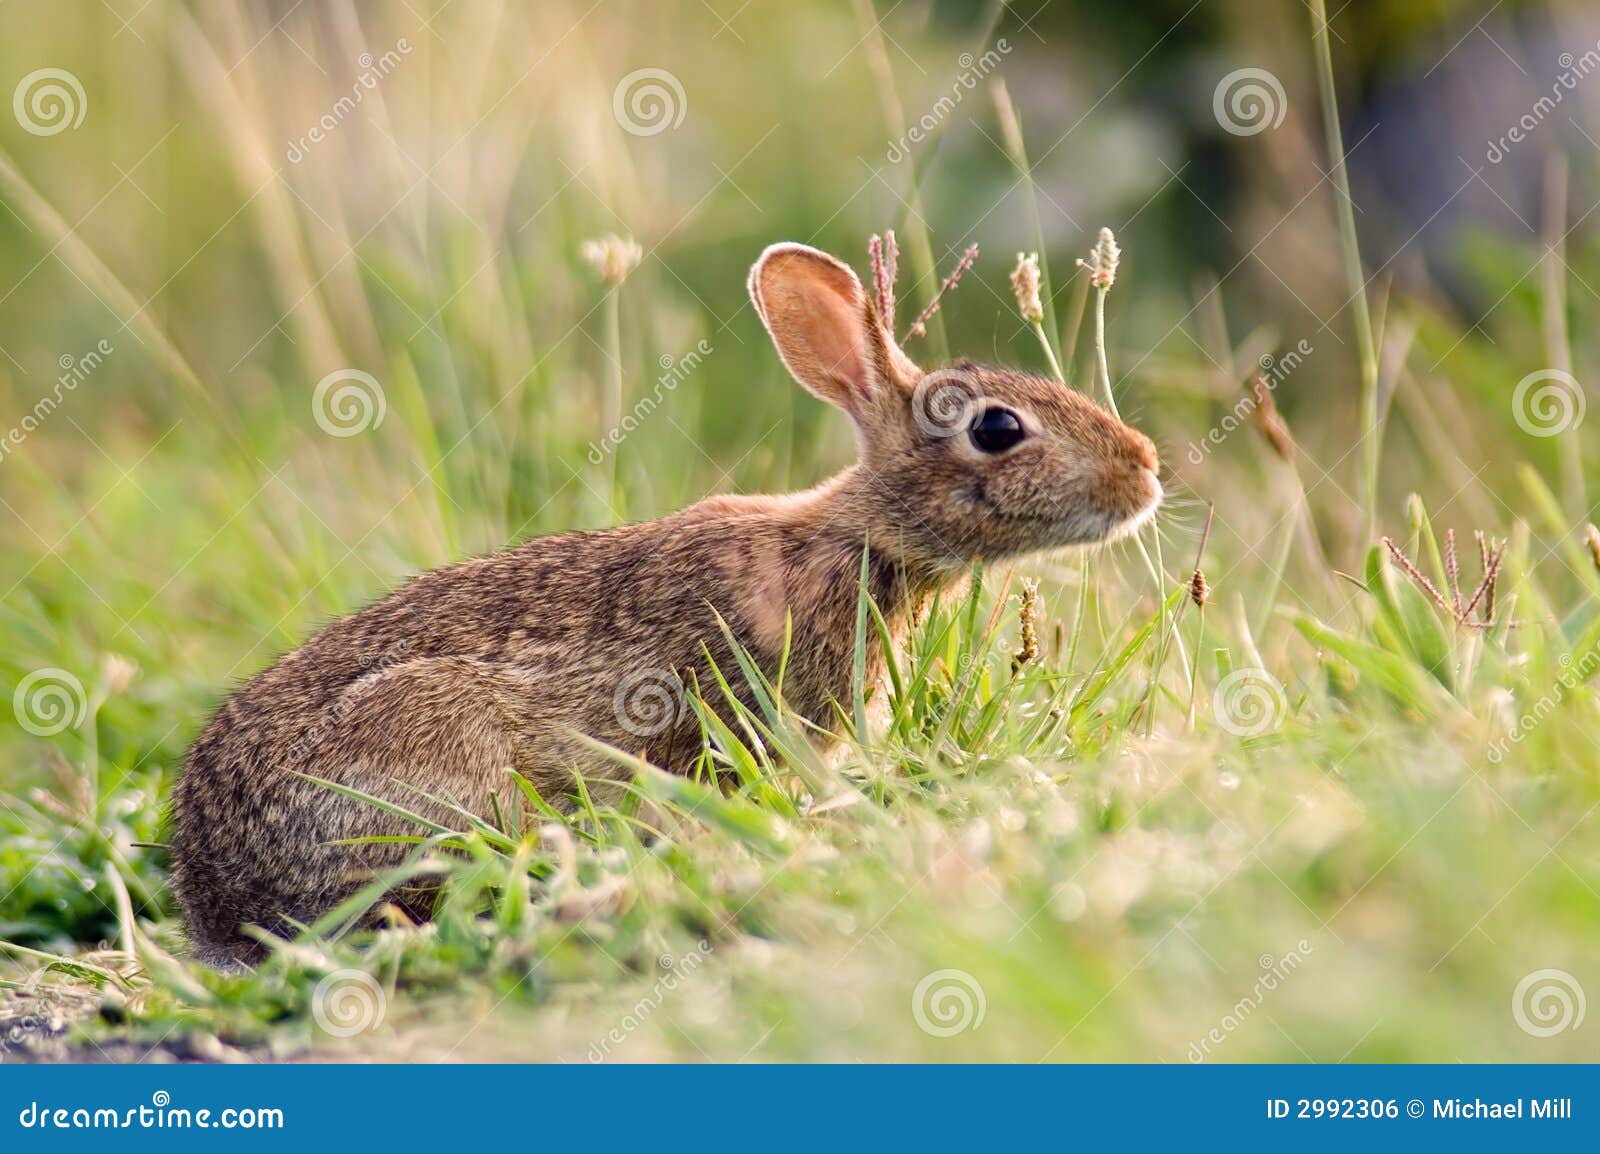 Um coelho de coelho alerta na grama.